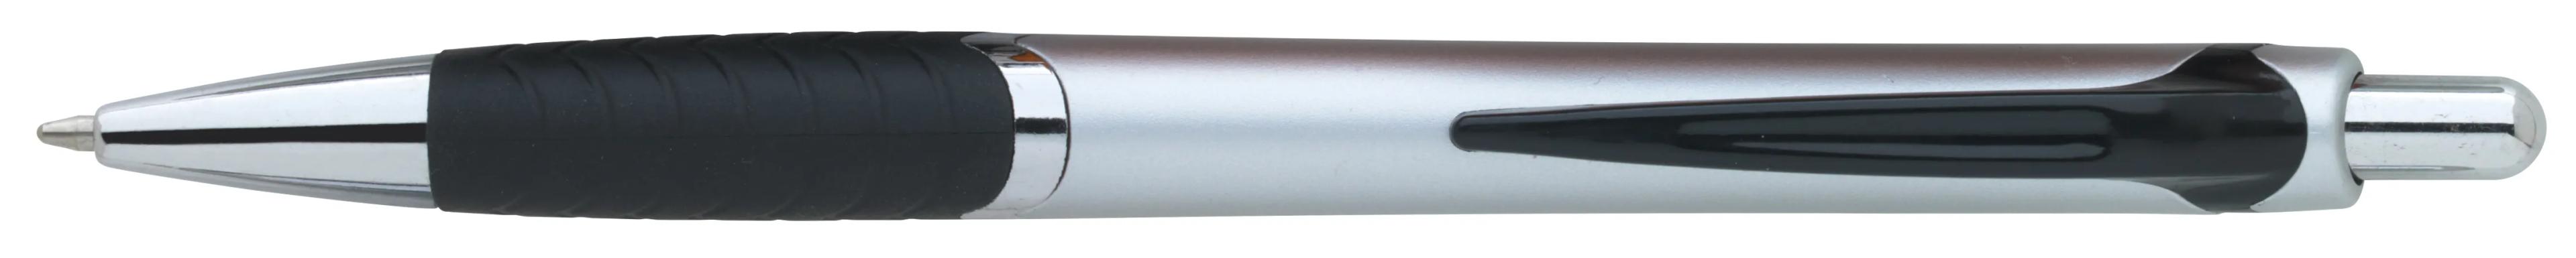 Arrow Metallic Pen 29 of 43